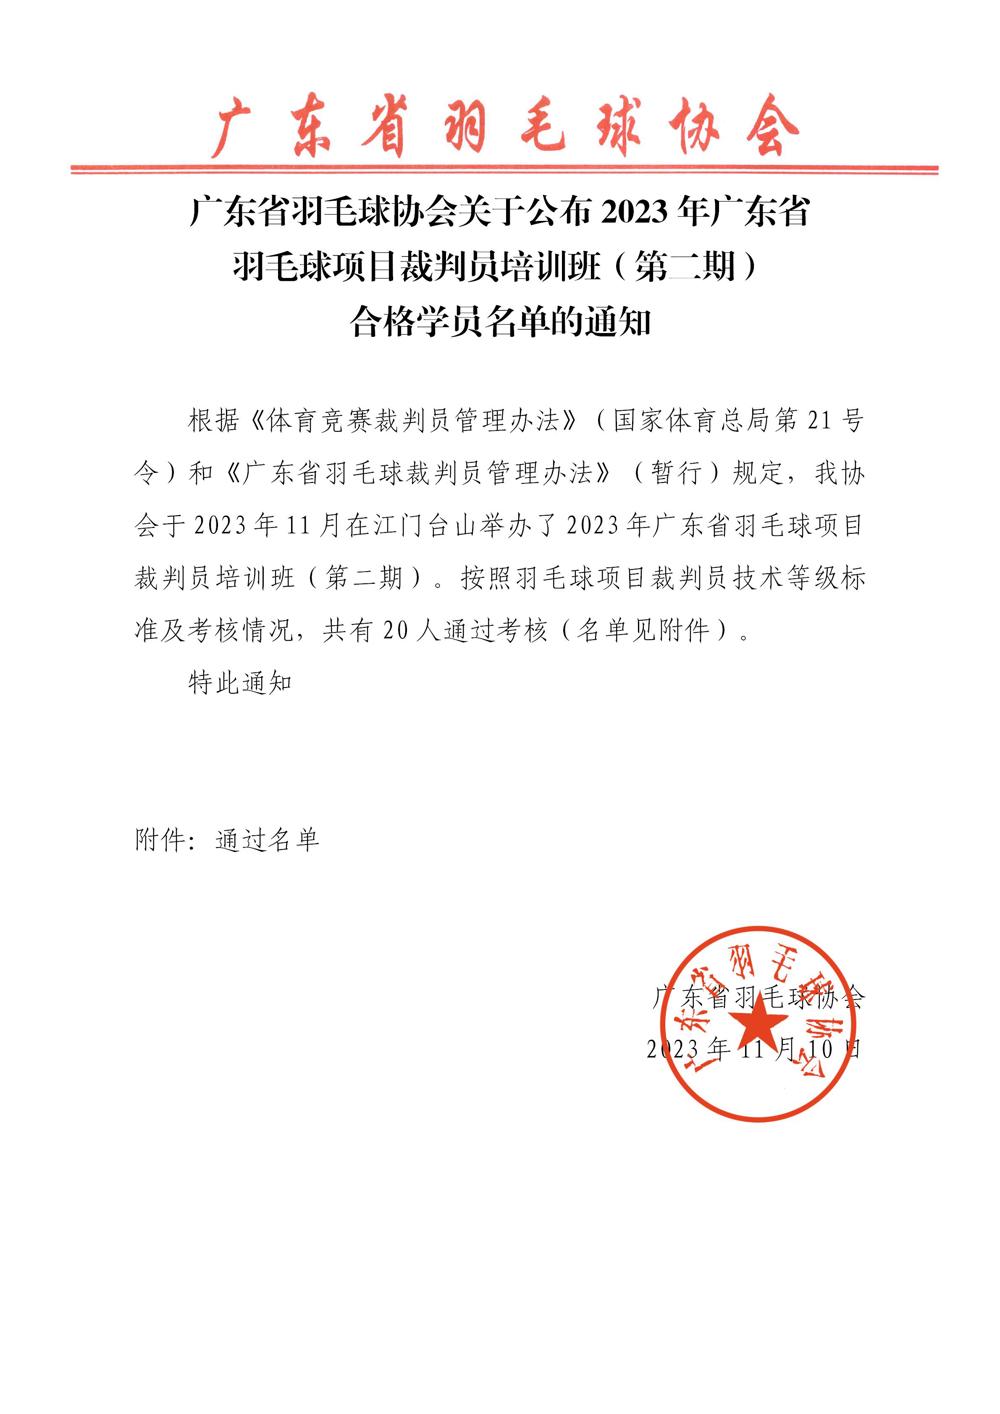 广东省羽毛球协会关于公布2023年广东省羽毛球项目裁判员培训班（第二期）合格学员名单的通知_01